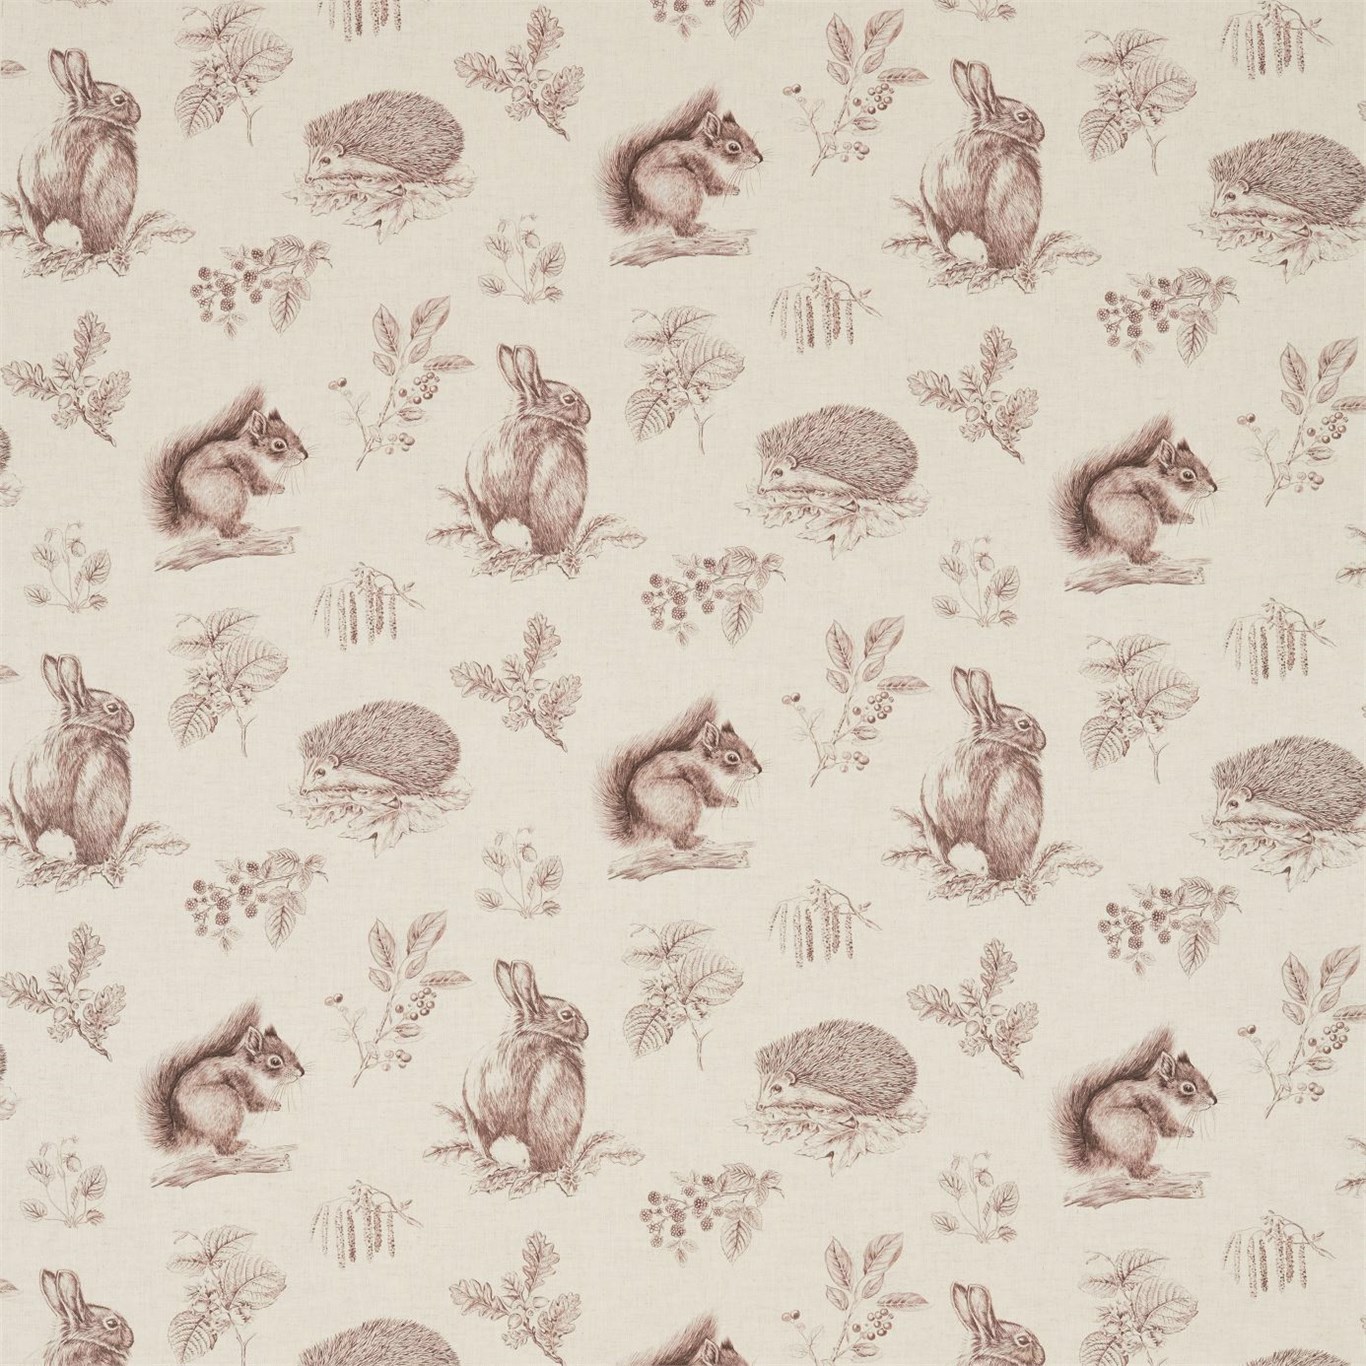 Squirrel & Hedgehog Walnut/Linen Fabric by SAN